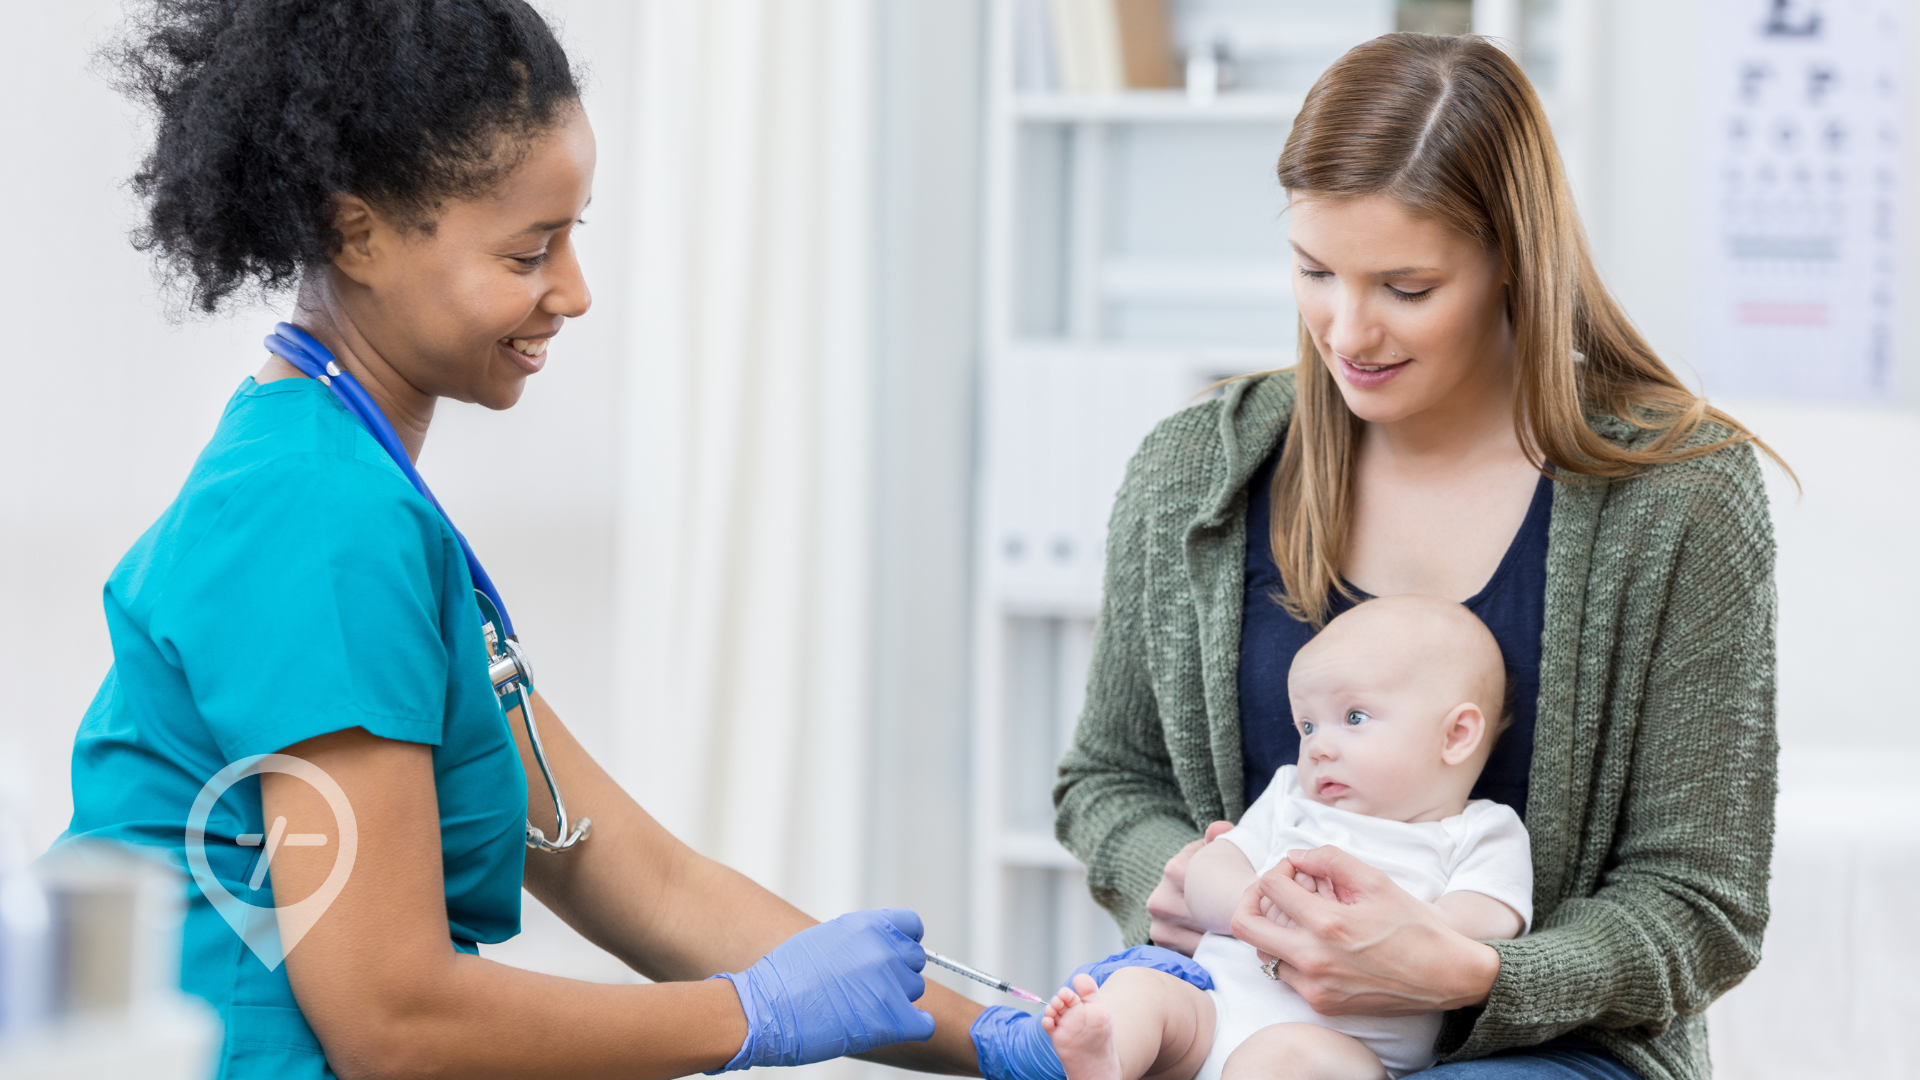 A nurse gives a baby a vaccination.